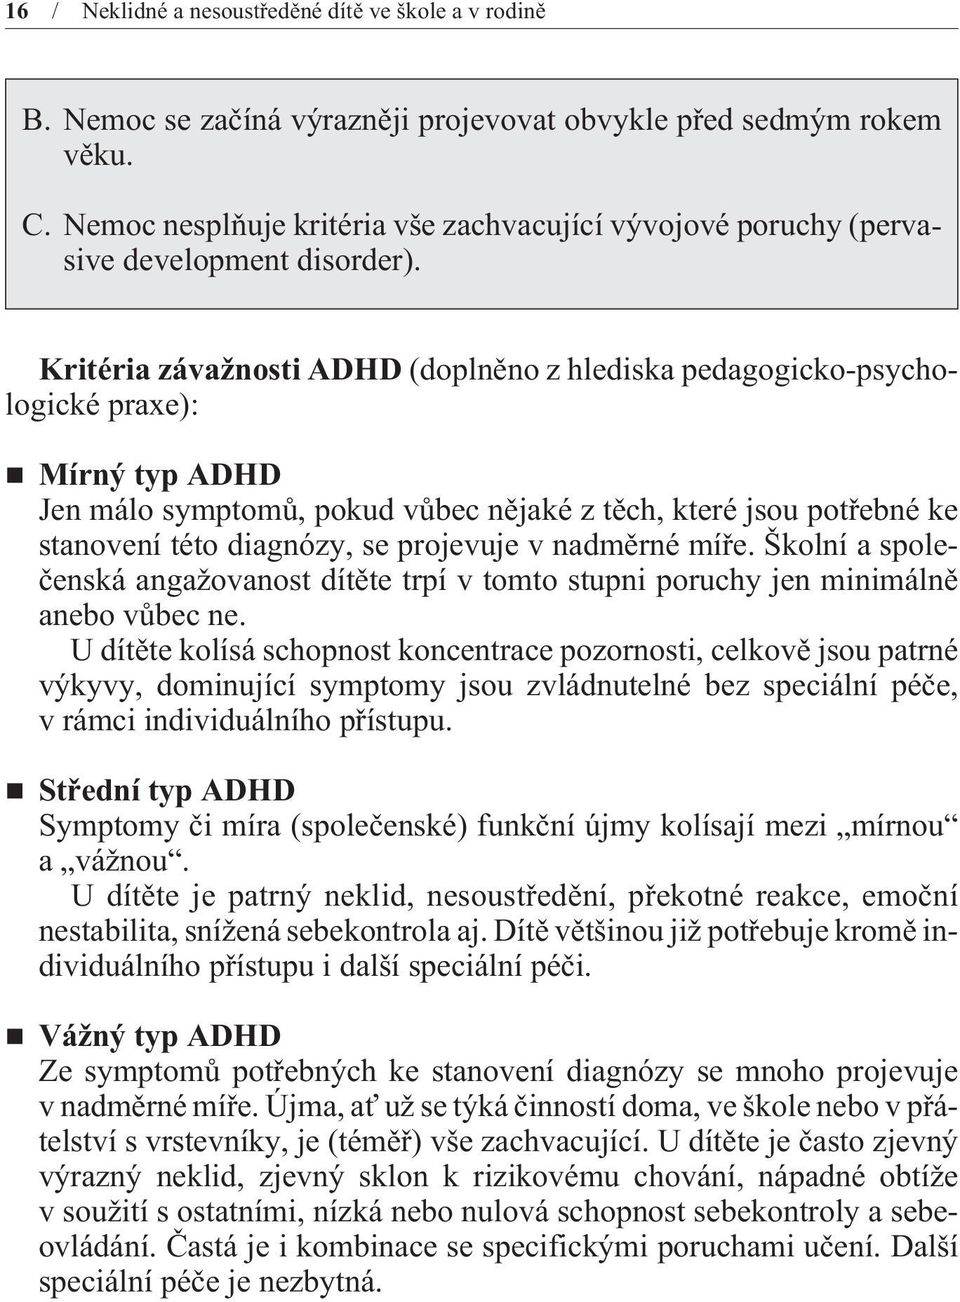 Kritéria závažnosti ADHD (doplnìno z hlediska pedagogicko-psychologické praxe): Mírný typ ADHD Jen málo symptomù, pokud vùbec nìjaké z tìch, které jsou potøebné ke stanovení této diagnózy, se